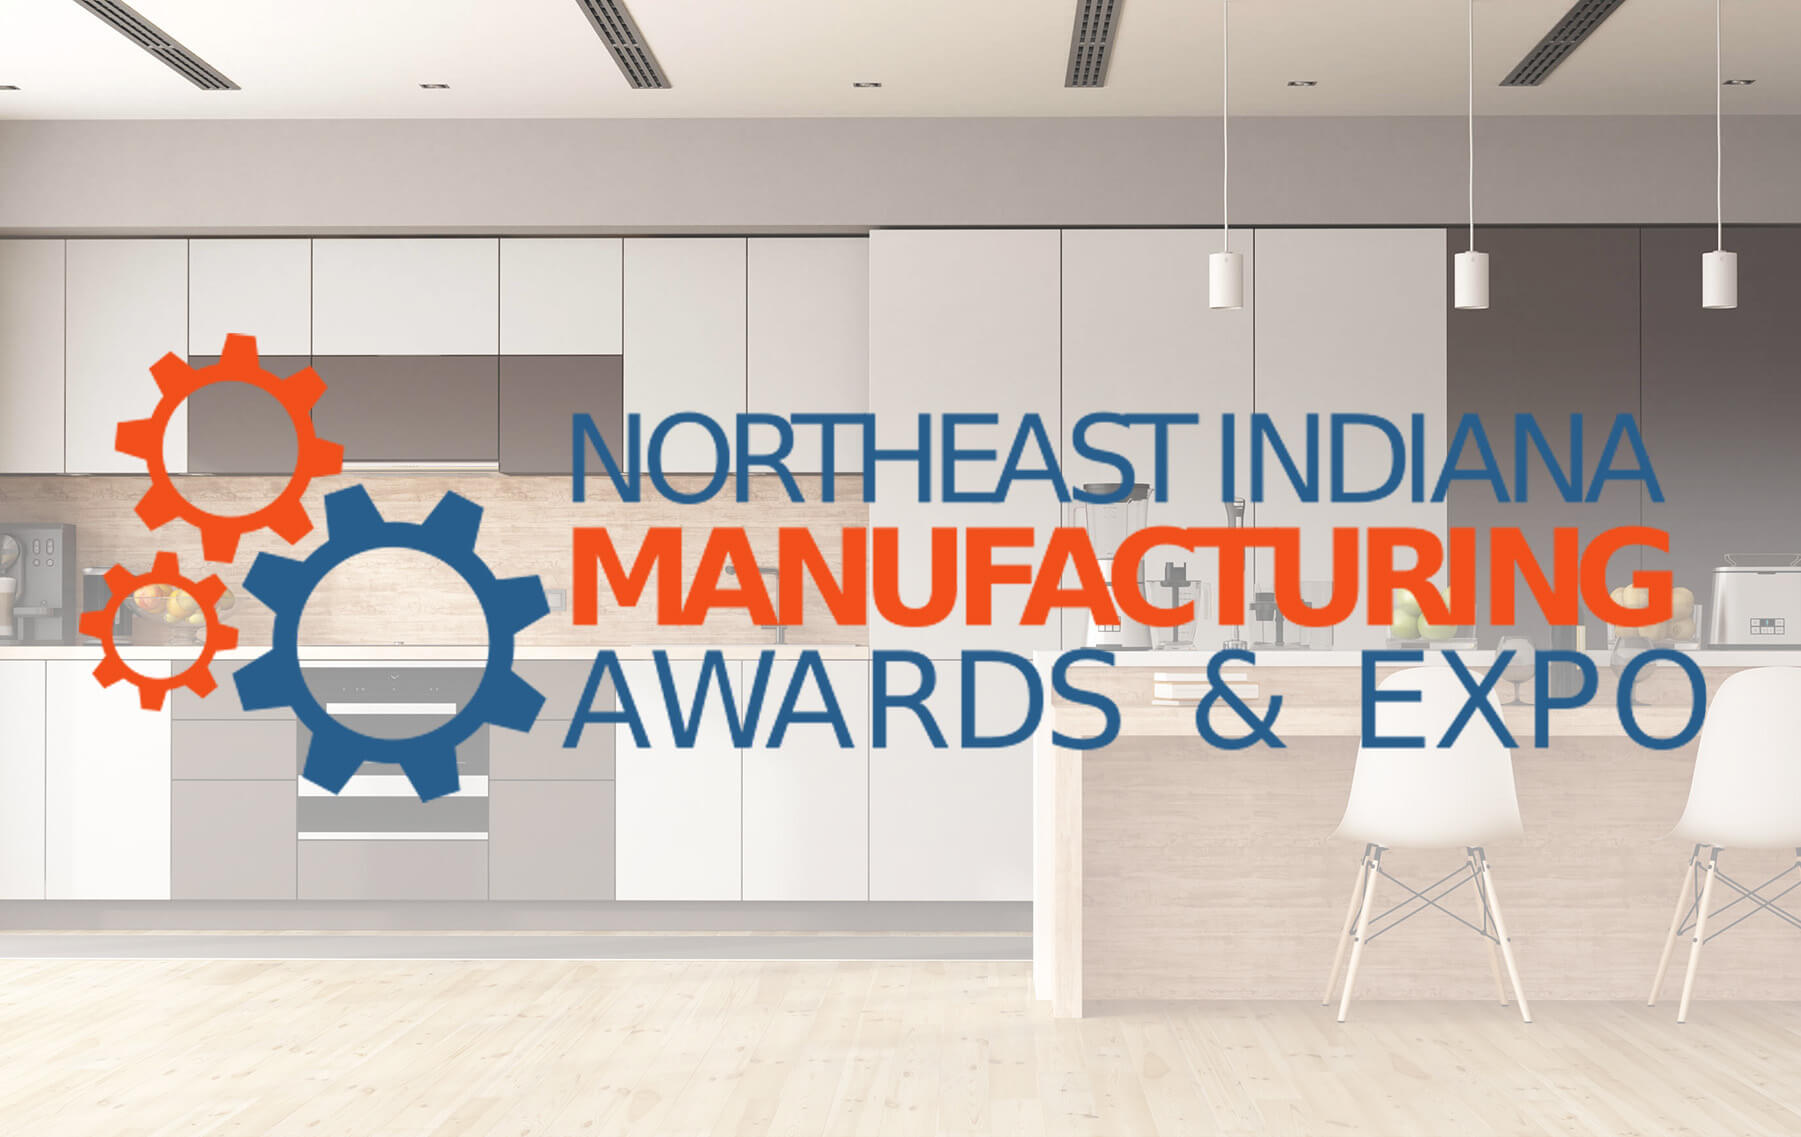 NE Indiana Manufacturing Awards & Expo